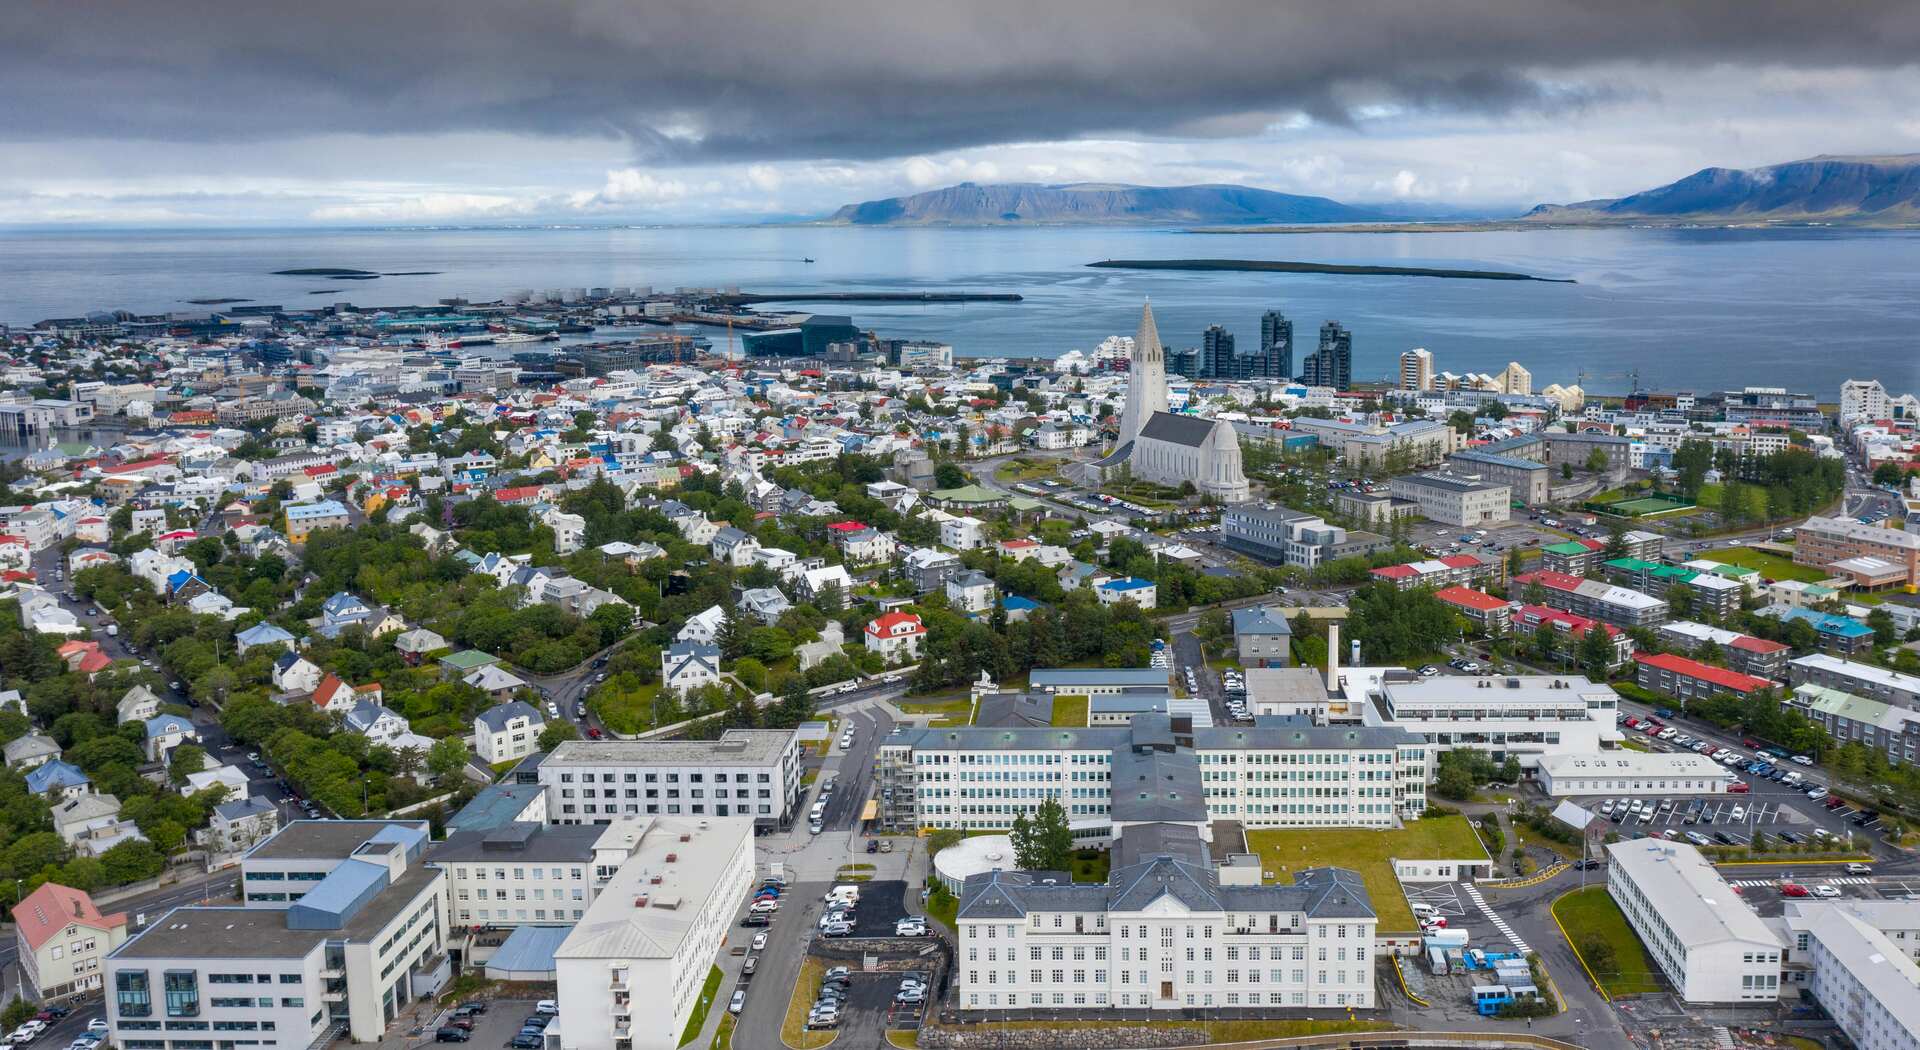 Aerial view of Reykjavík, Iceland